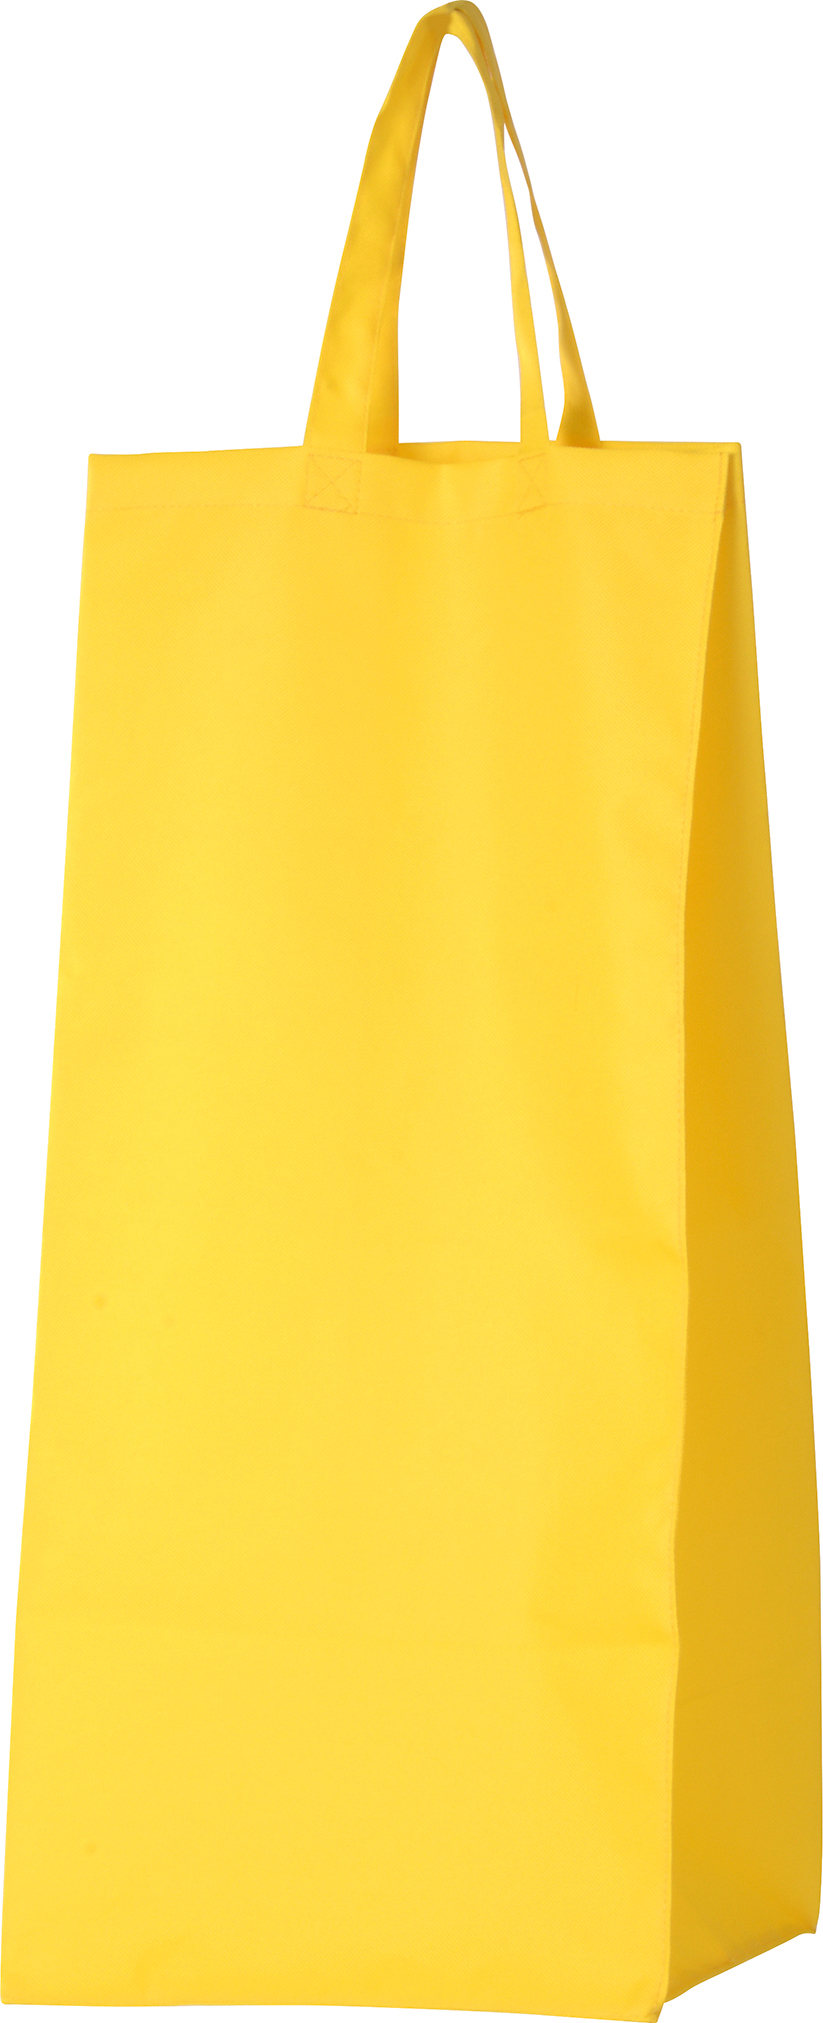 Hüpfsack gelb für Kinder